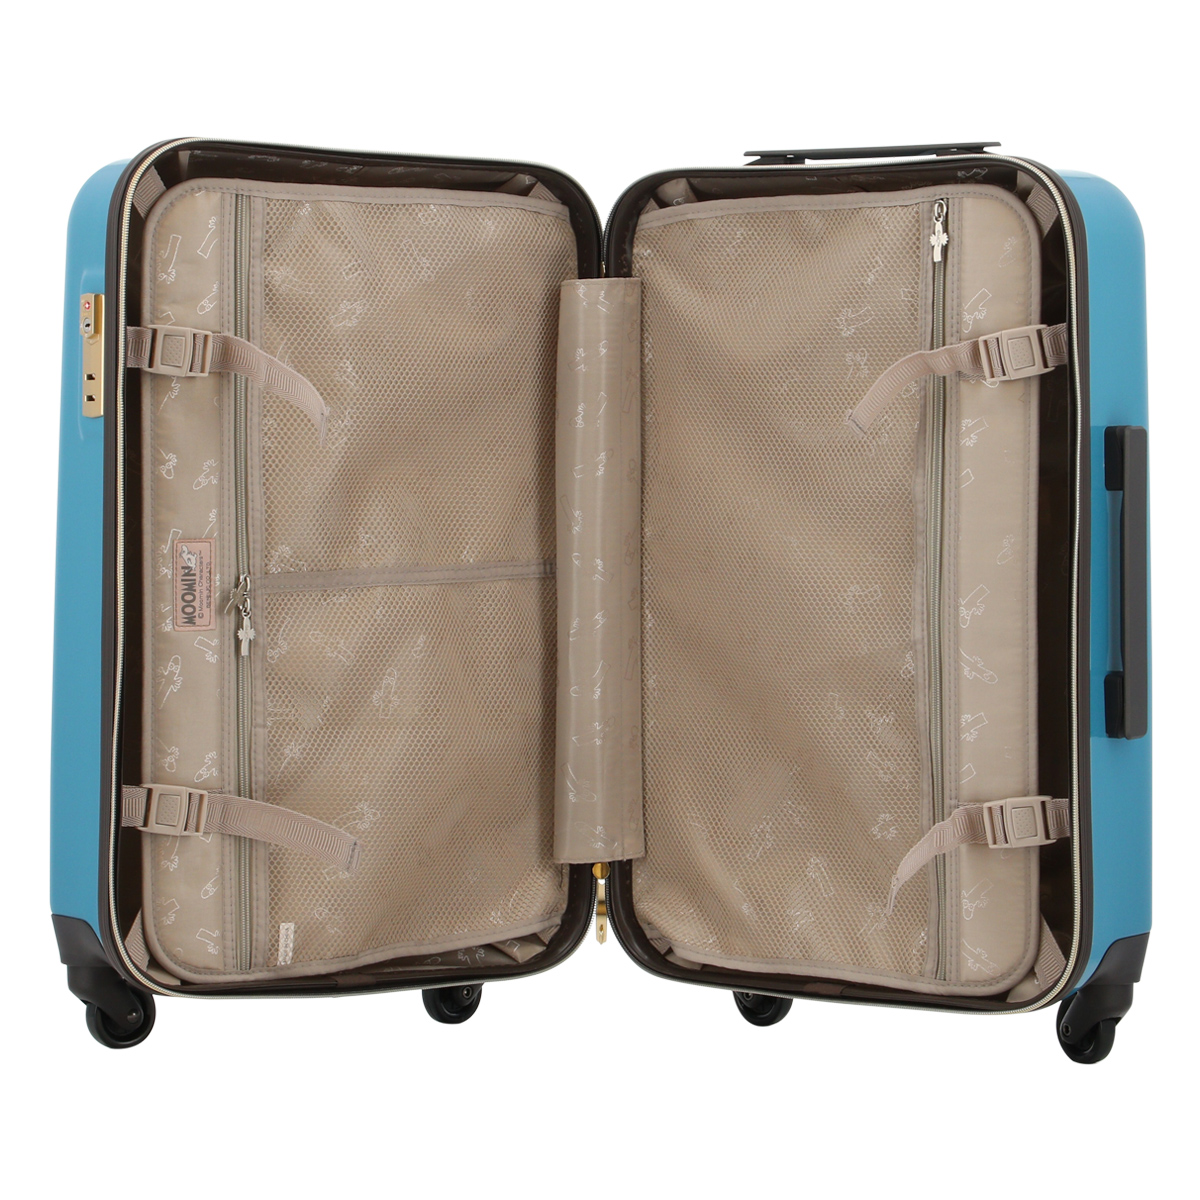 ムーミン スーツケース 44L 55.5cm 3.0kg レディース MM2-026 MOOMIN